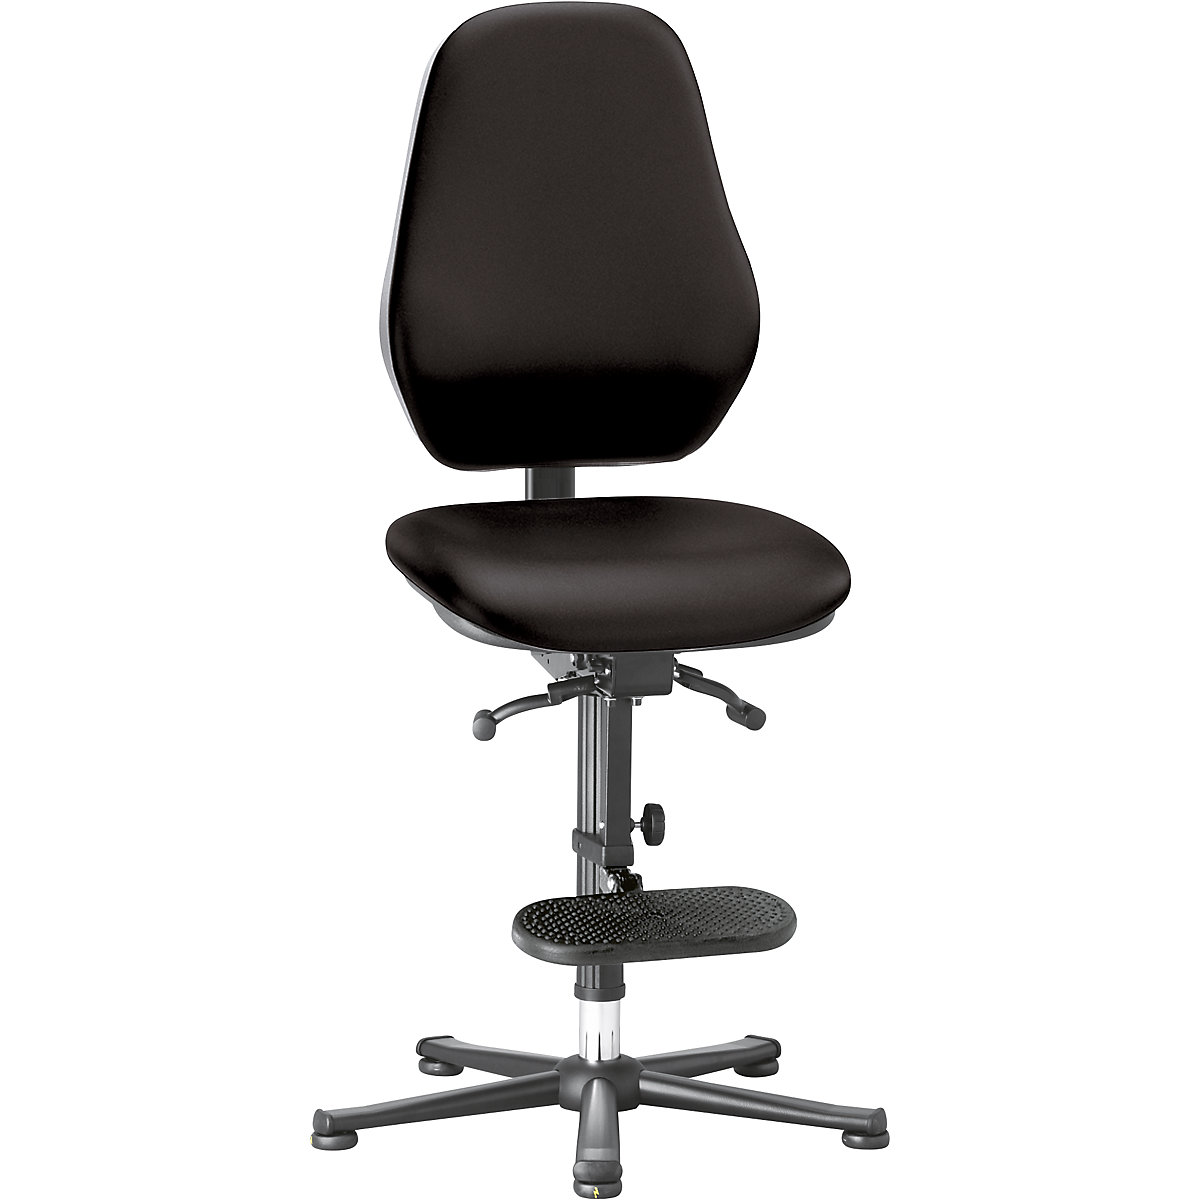 Pracovní otočná židle – bimos, s ochranou ESD, plynová pružina, patky, pomůcka pro výstup, černý koženkový potah-8